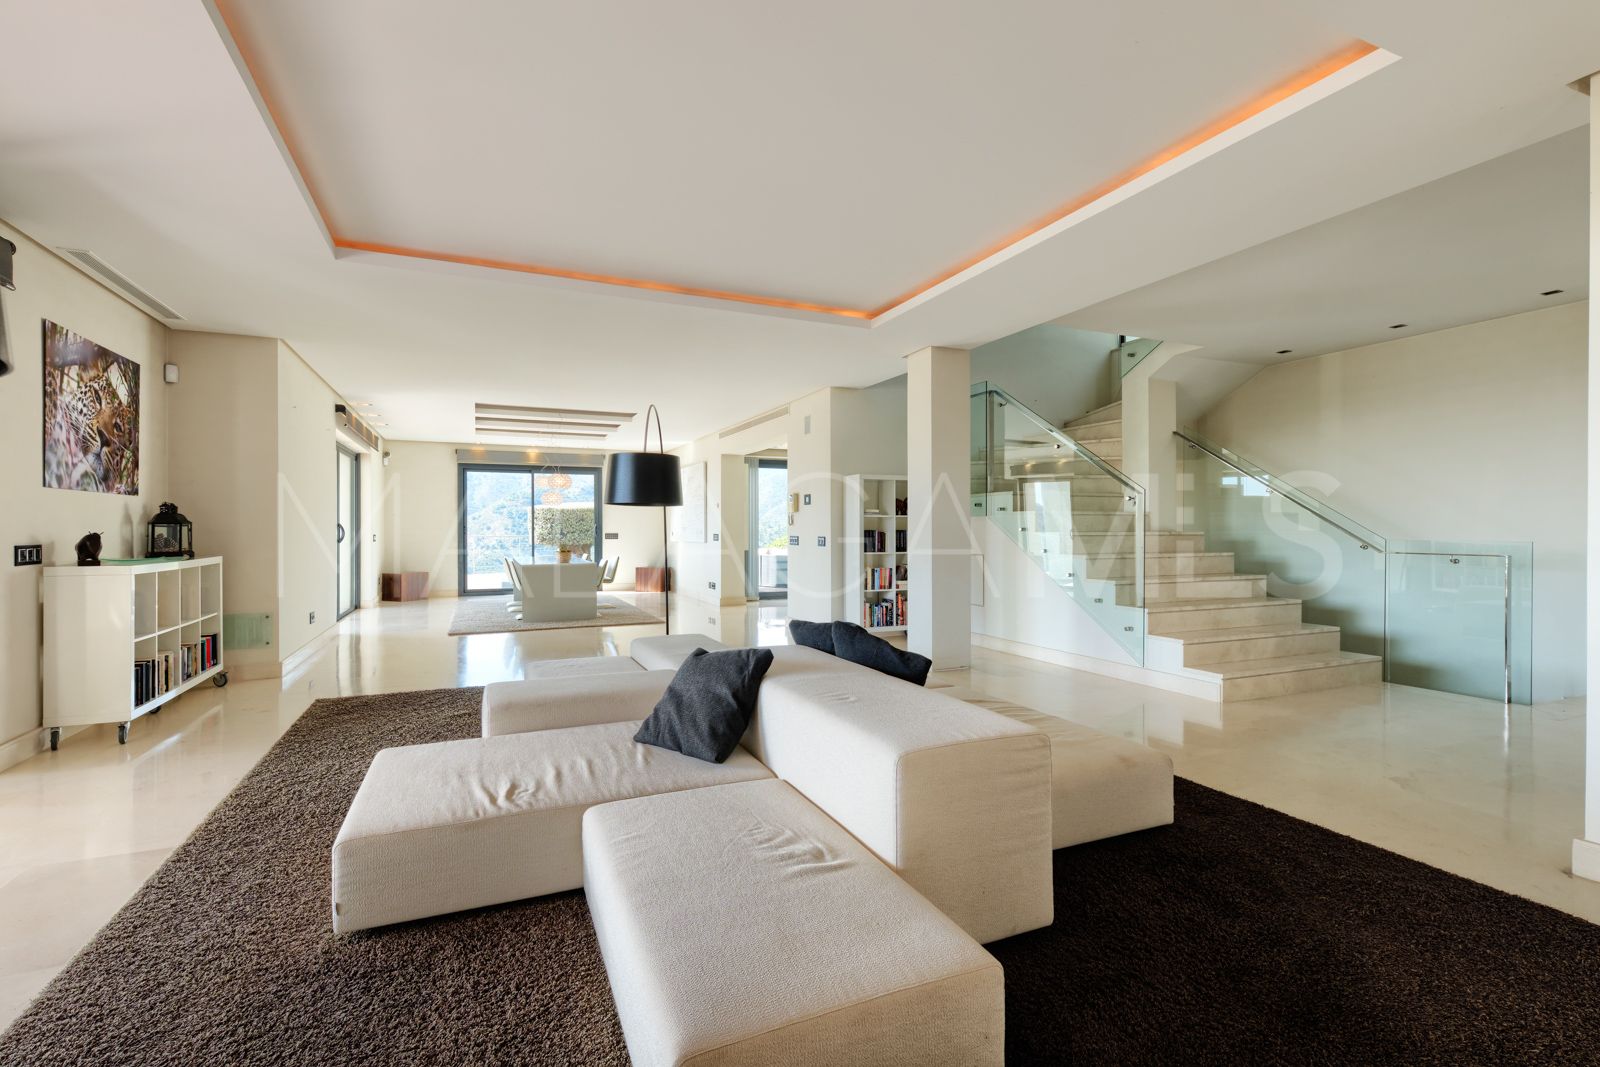 Villa for sale in Carretera de Istan